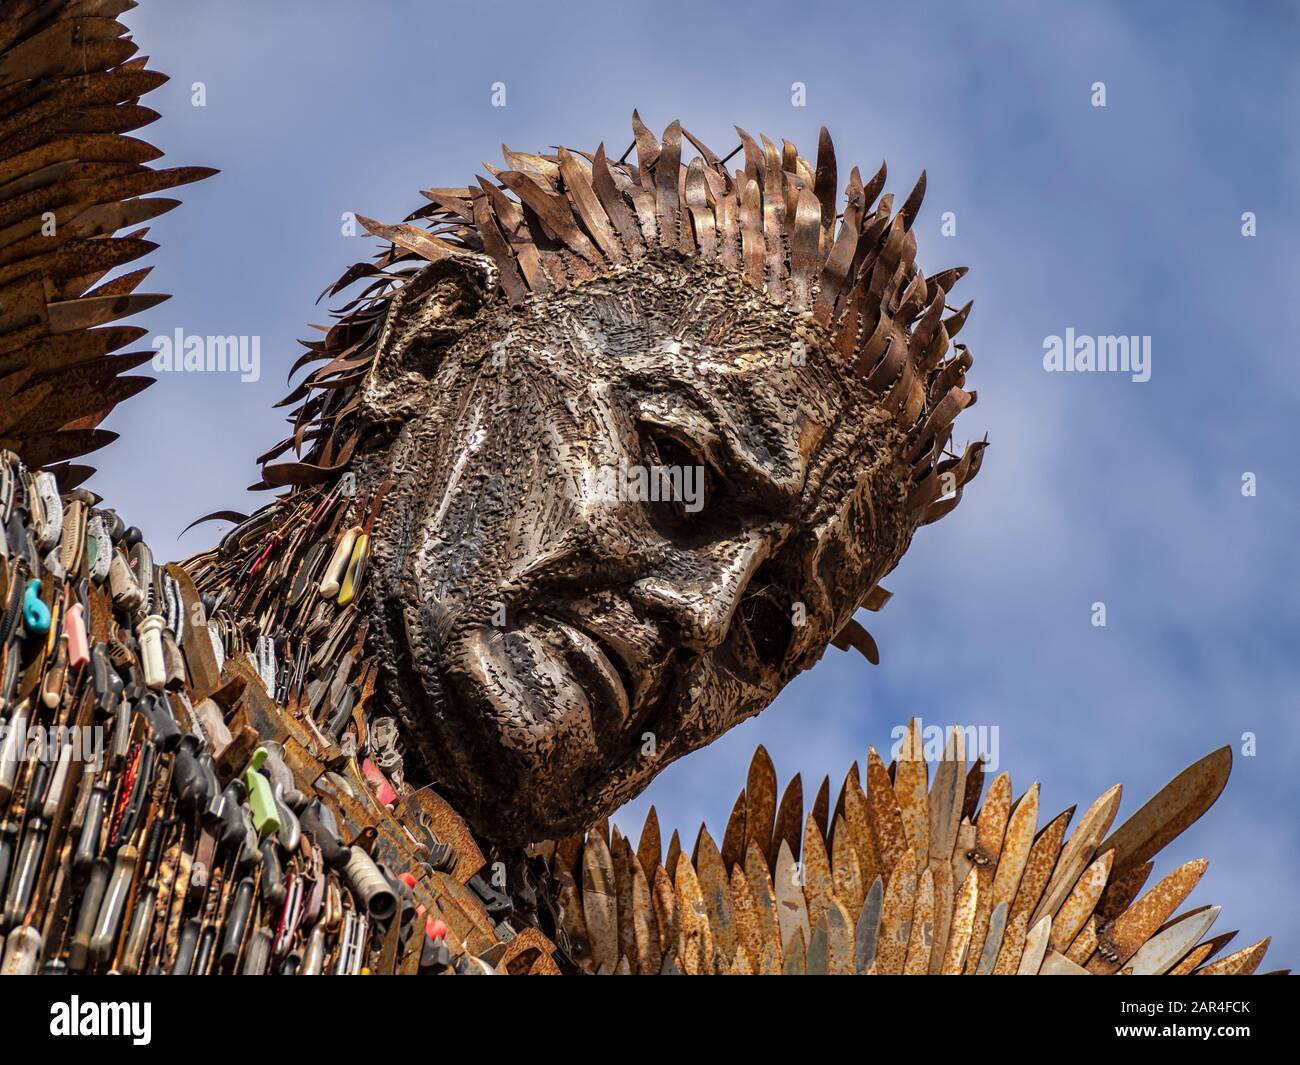 BIRMINGHAM, Großbritannien - 28. MAI 2019: Die Messerengel-Statue des britischen Eisenwerks ist eine Statue, die aus beschlagnahmten Messern geschaffen wurde, um das Negative hervorzuheben Stockfoto